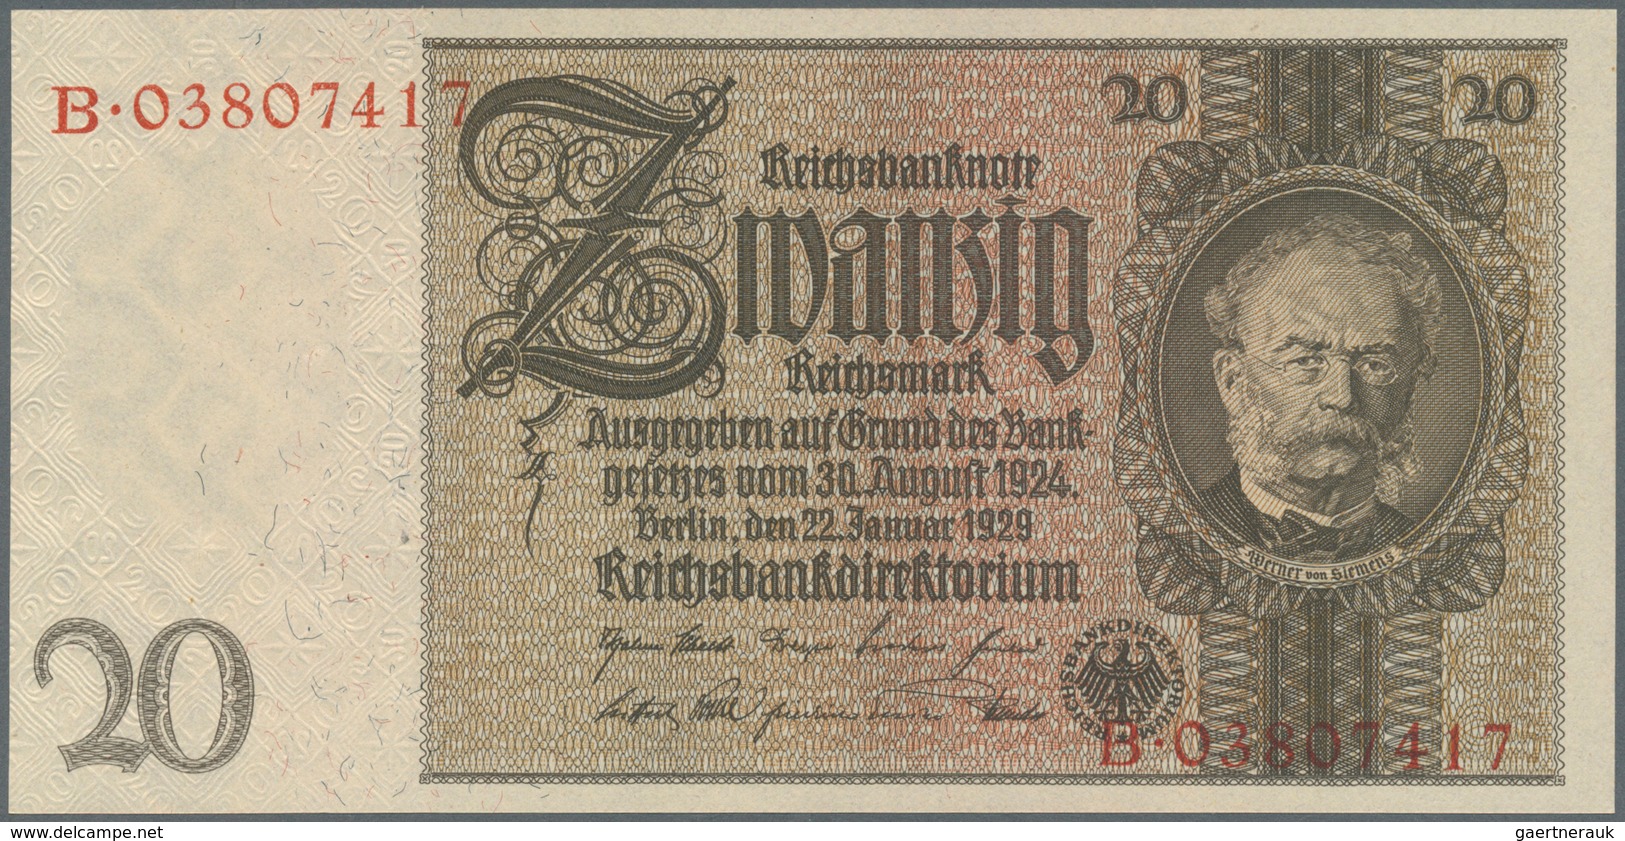 Deutschland - Deutsches Reich bis 1945: Set mit 9 Banknoten der Ausgaben 1929 bis 1936, dabei 2 x 10